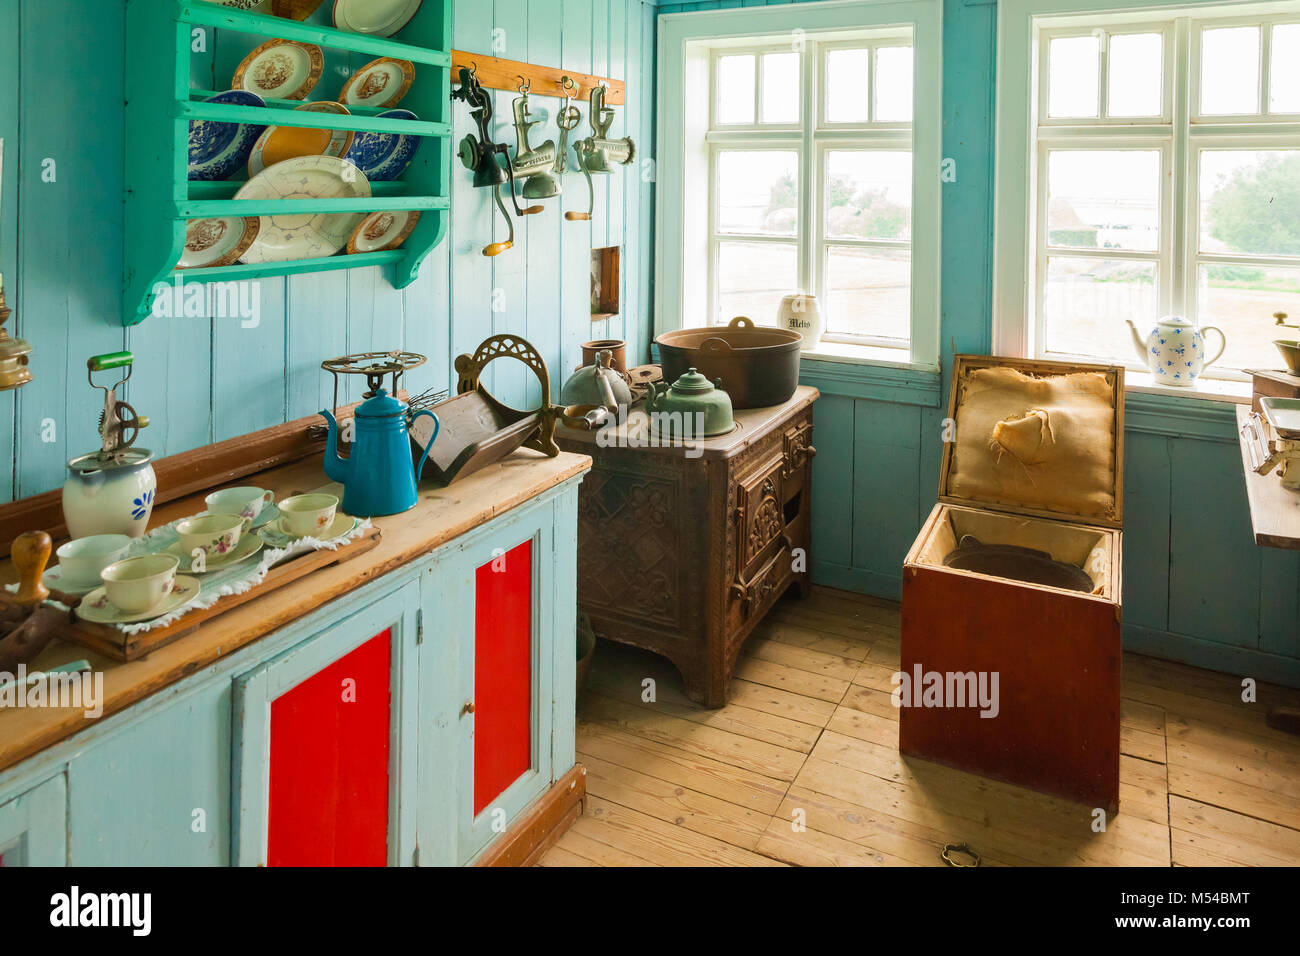 house kitchen in skogar museum iceland Stock Photo